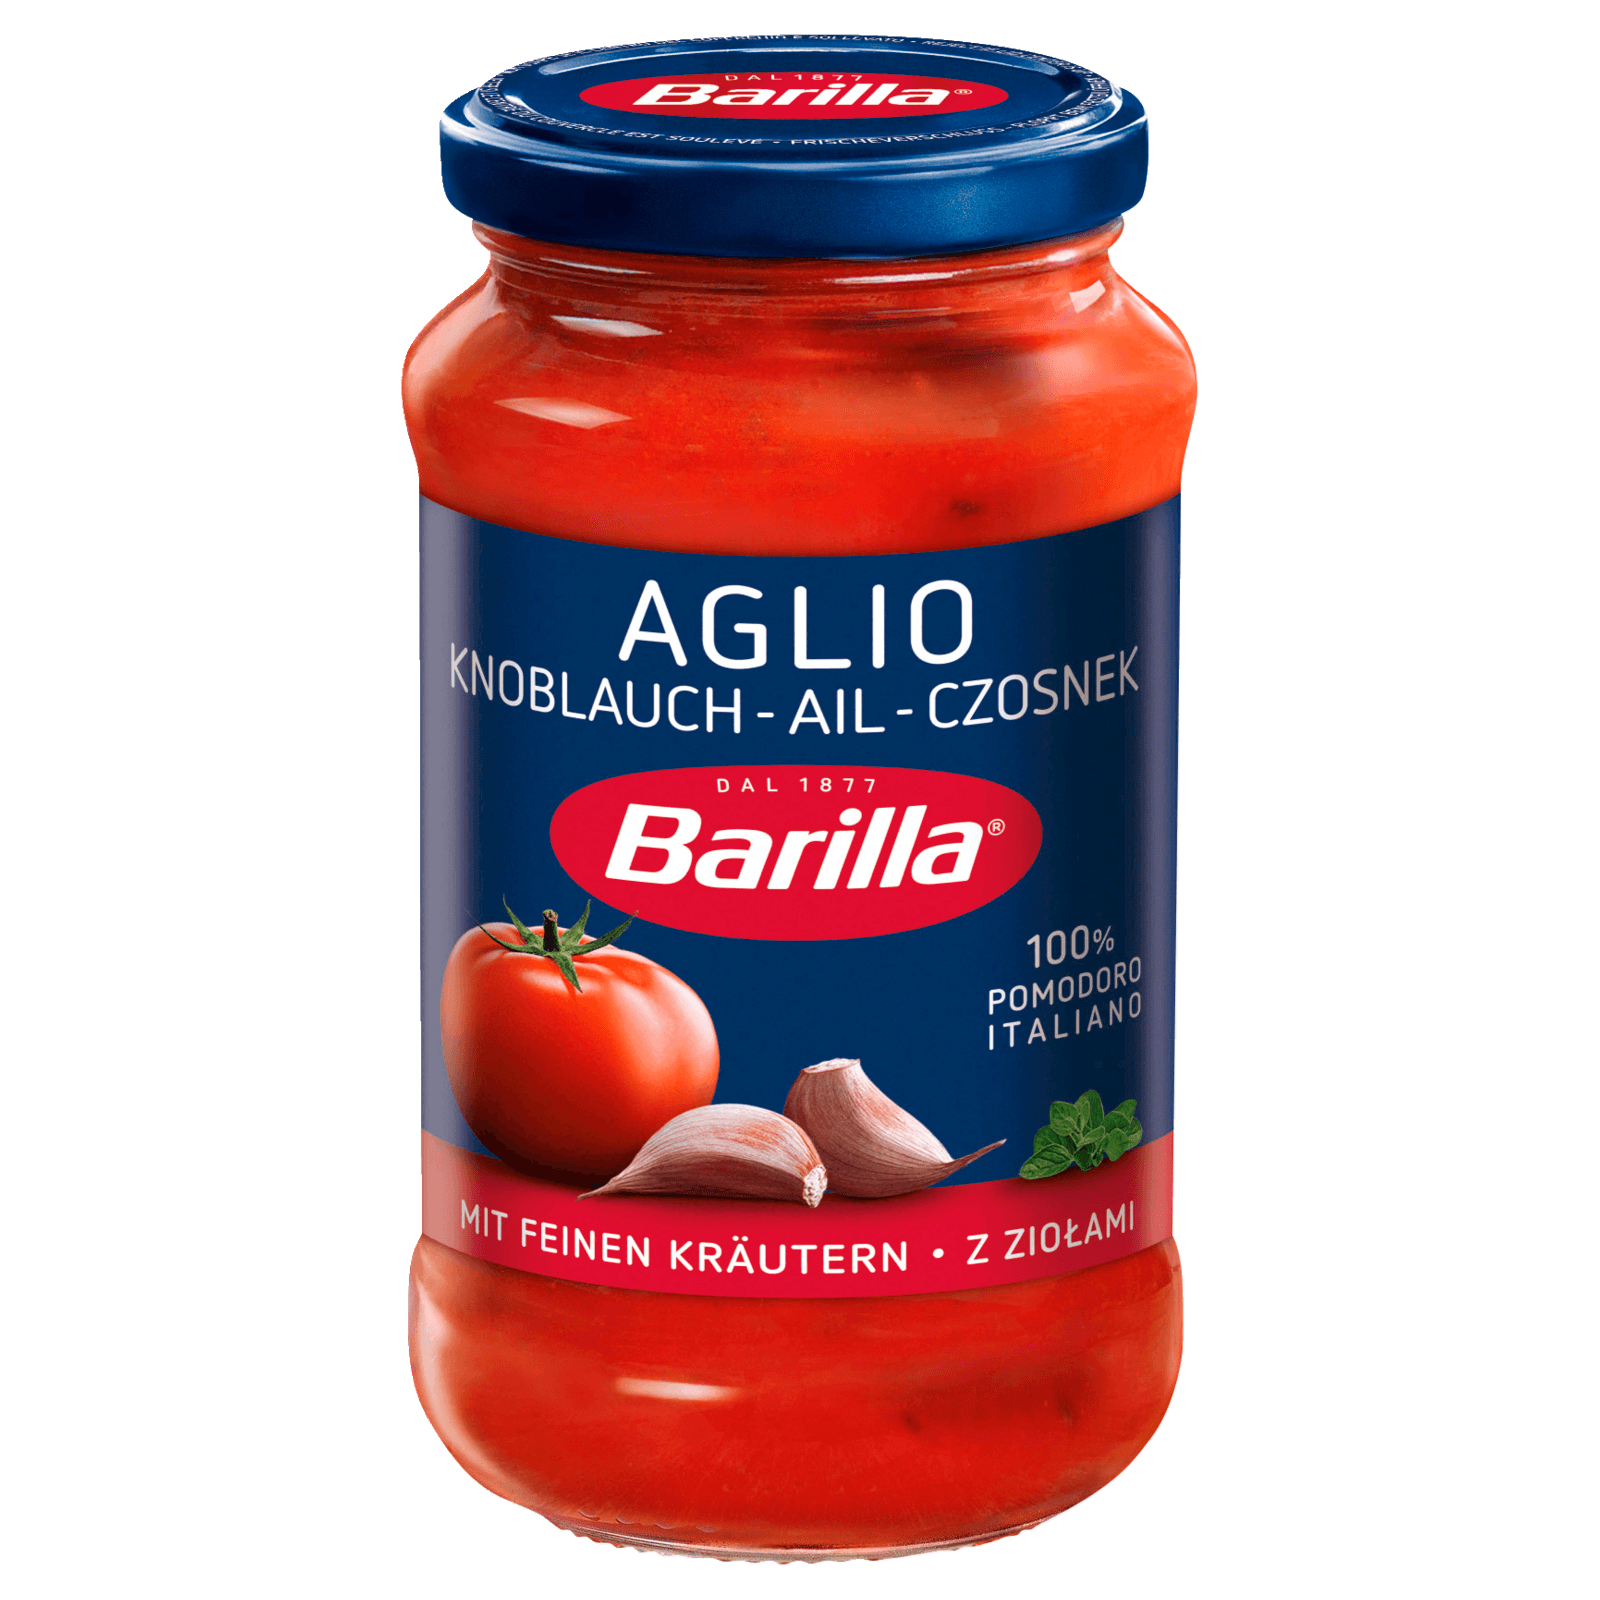 Barilla Sauce Aglio 400g bei REWE online bestellen!